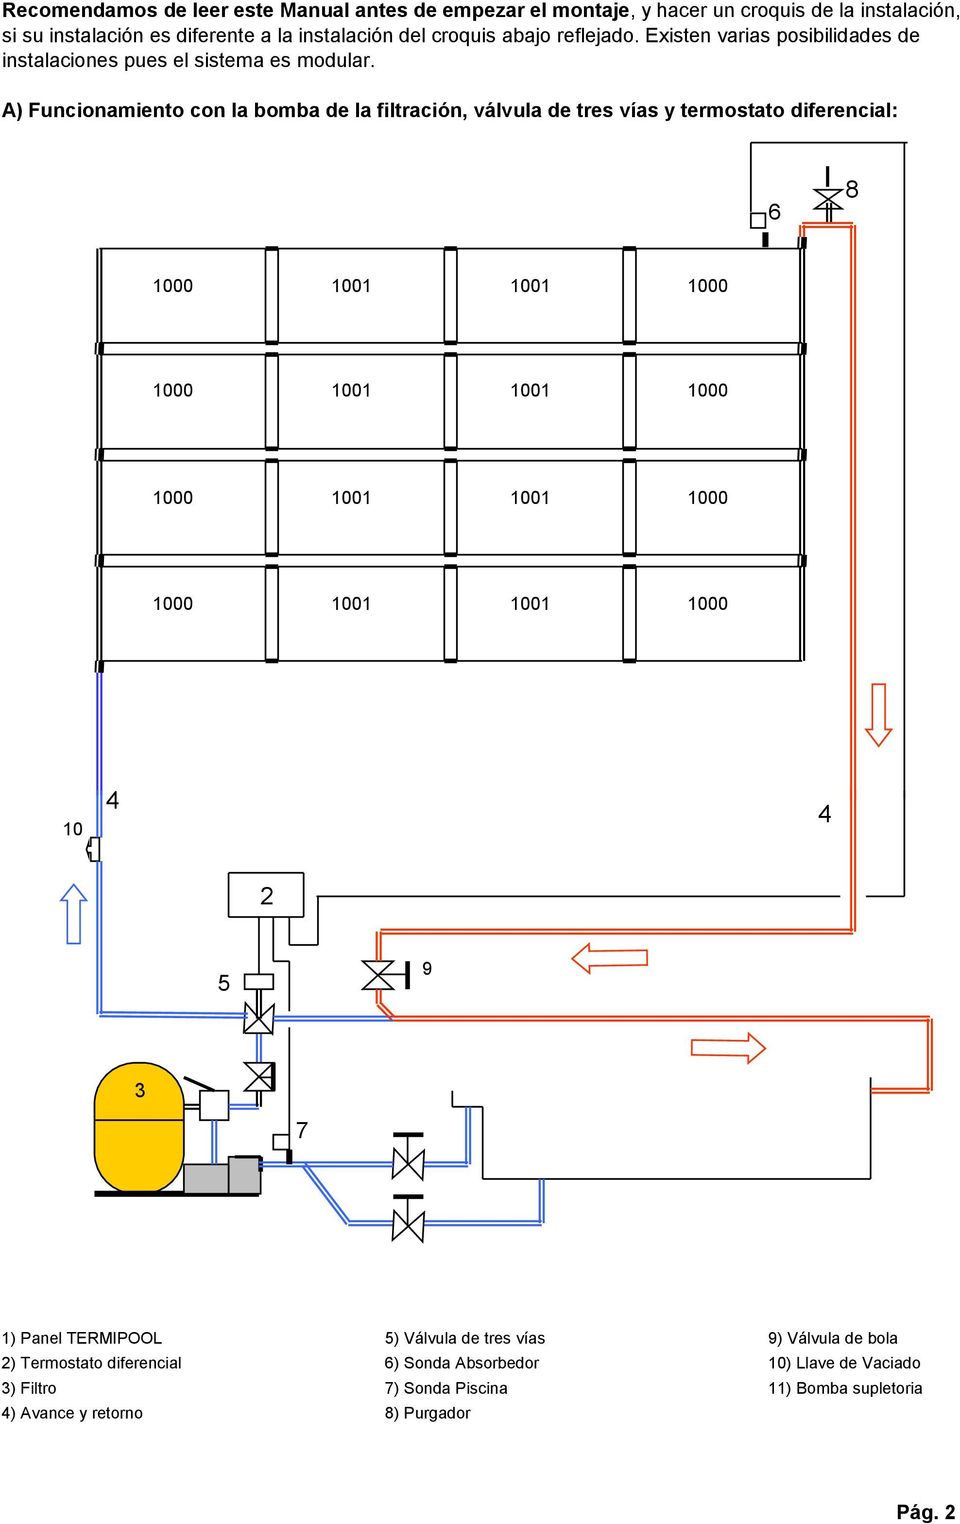 A) Funcionamiento con la bomba de la filtración, válvula de tres vías y termostato diferencial: 6 8 10 5 9 7 1) Panel TERMIPOOL 5) Válvula de